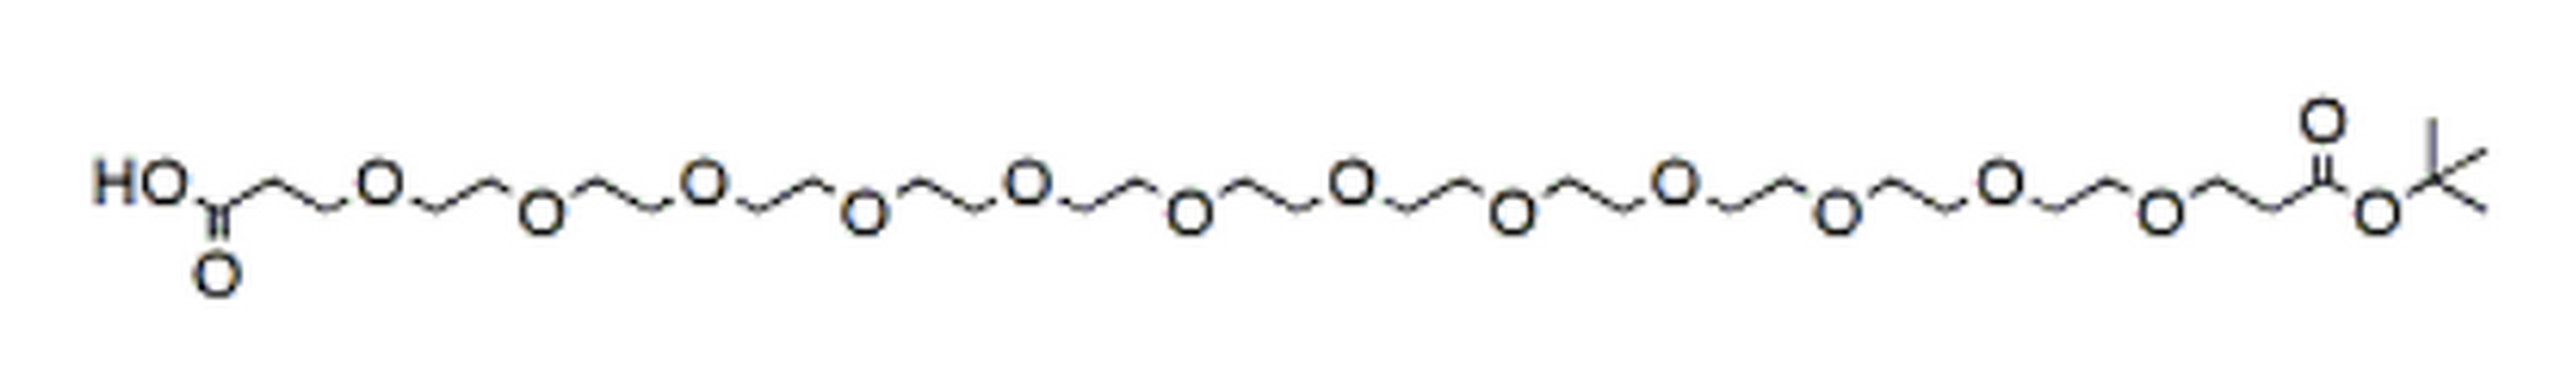 Acid-PEG12-t-butyl ester